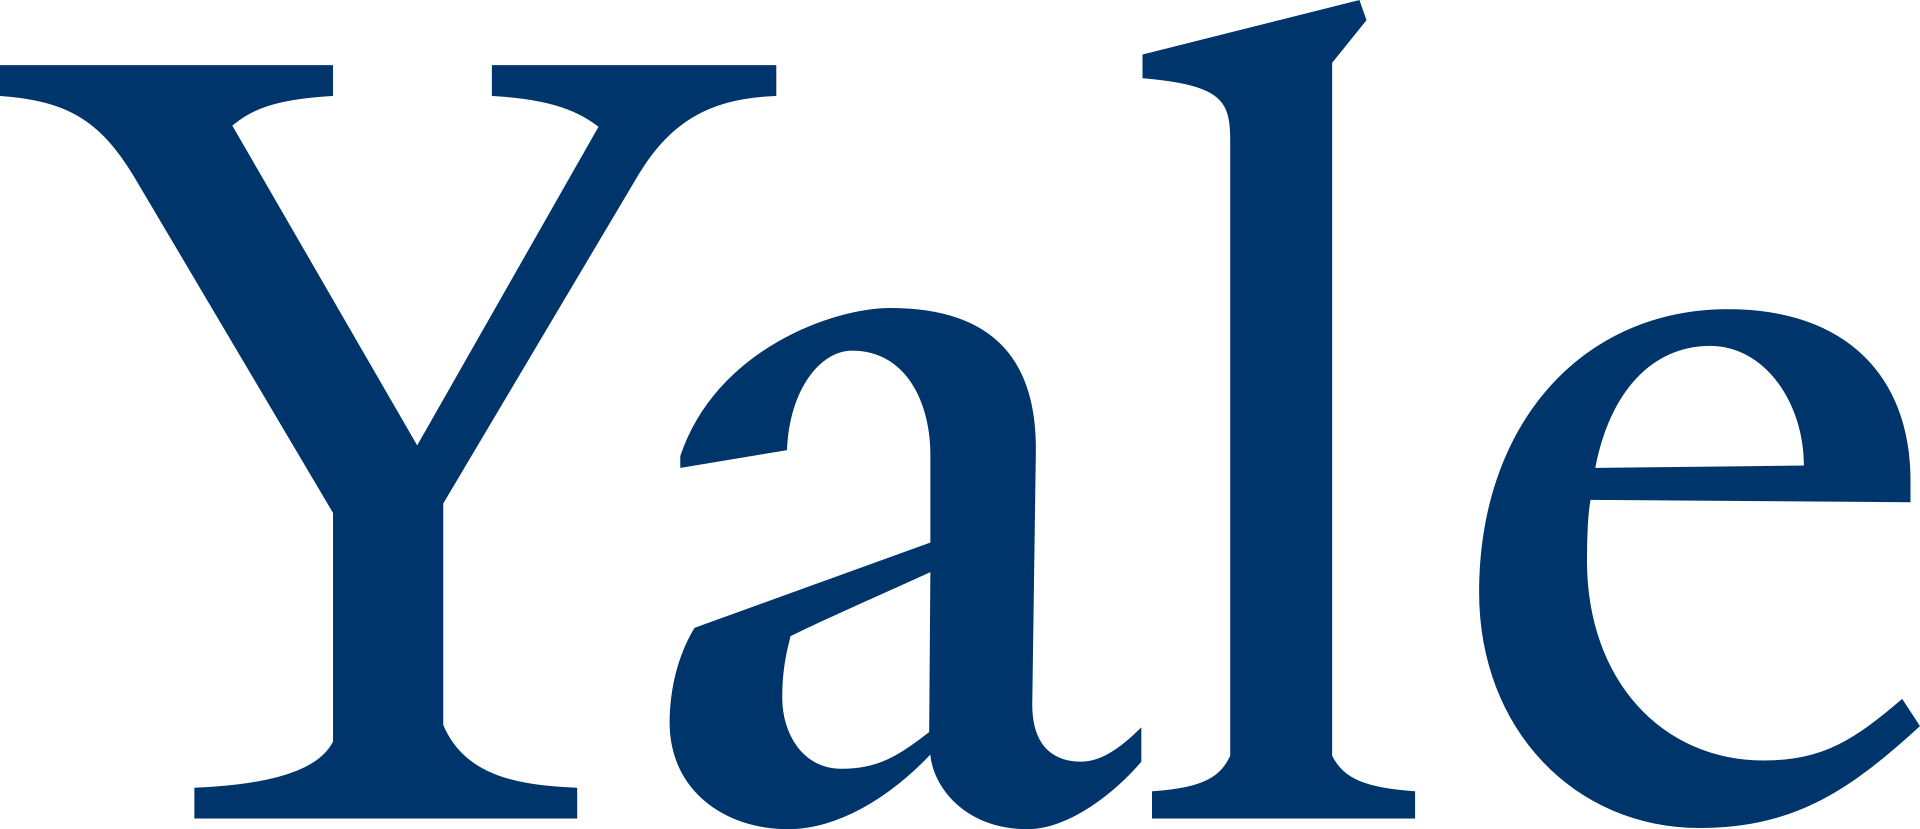 Yale University logo, By Yale University - http://identity.yale.edu/yale-logo-wordmarks, Public Domain, http://commons.wikimedia.org/w/index.php?curid=37348190"